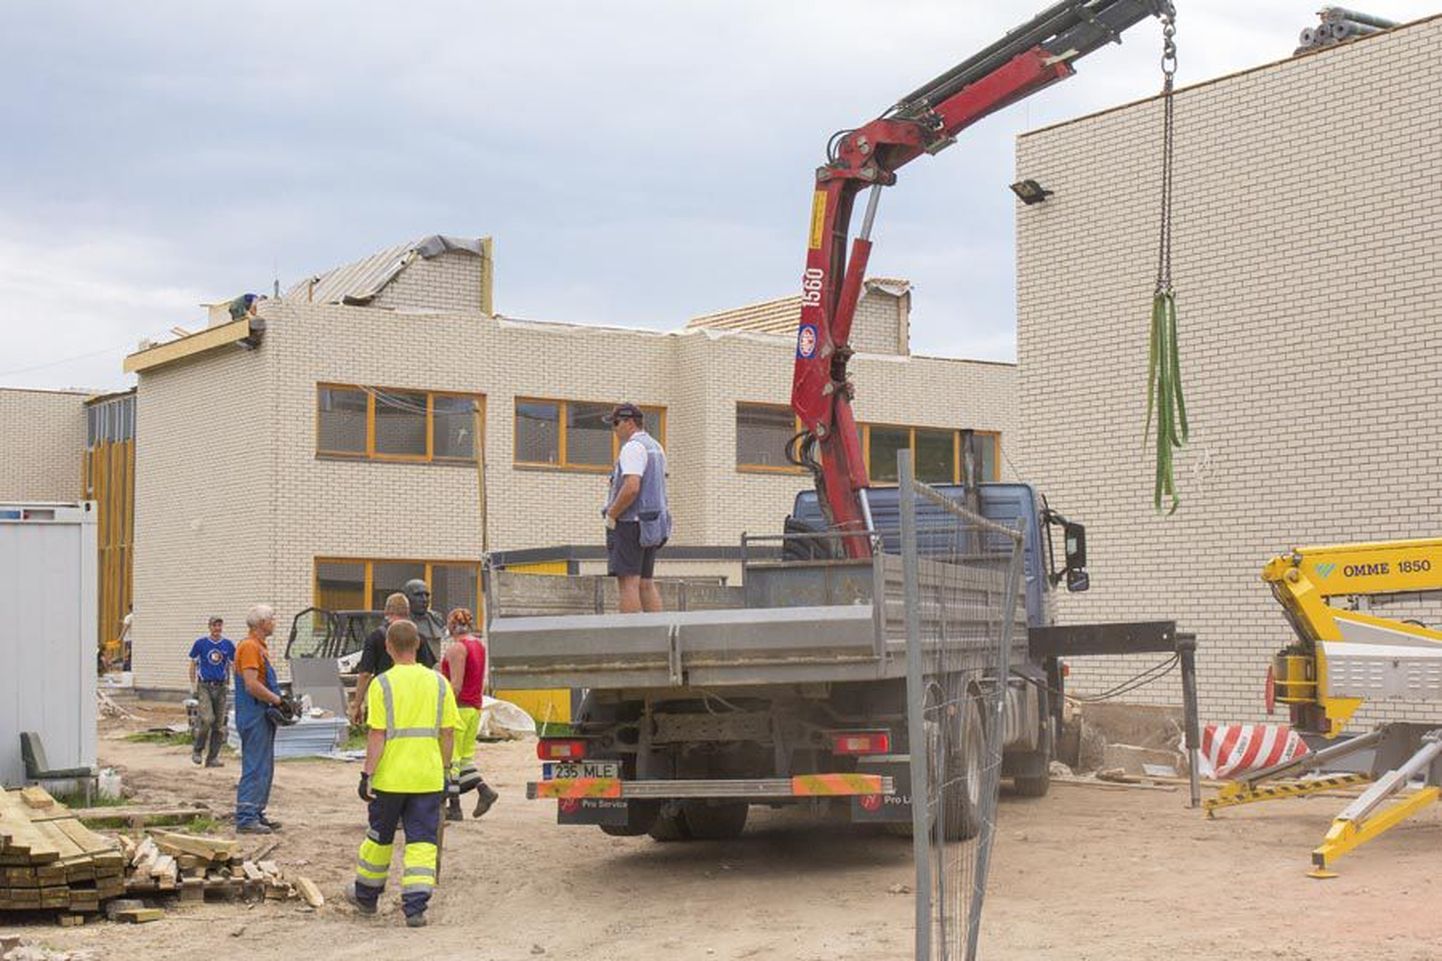 Niisuguseid tellimusi nagu Olustvere kooli renoveerimine on Eesti ehitusettevõtted viimasel ajal riigilt ja omavalitsustelt varasemast vähem saanud. Seetõttu on kogu majandusharu kaks kvartalit järjest languses olnud.